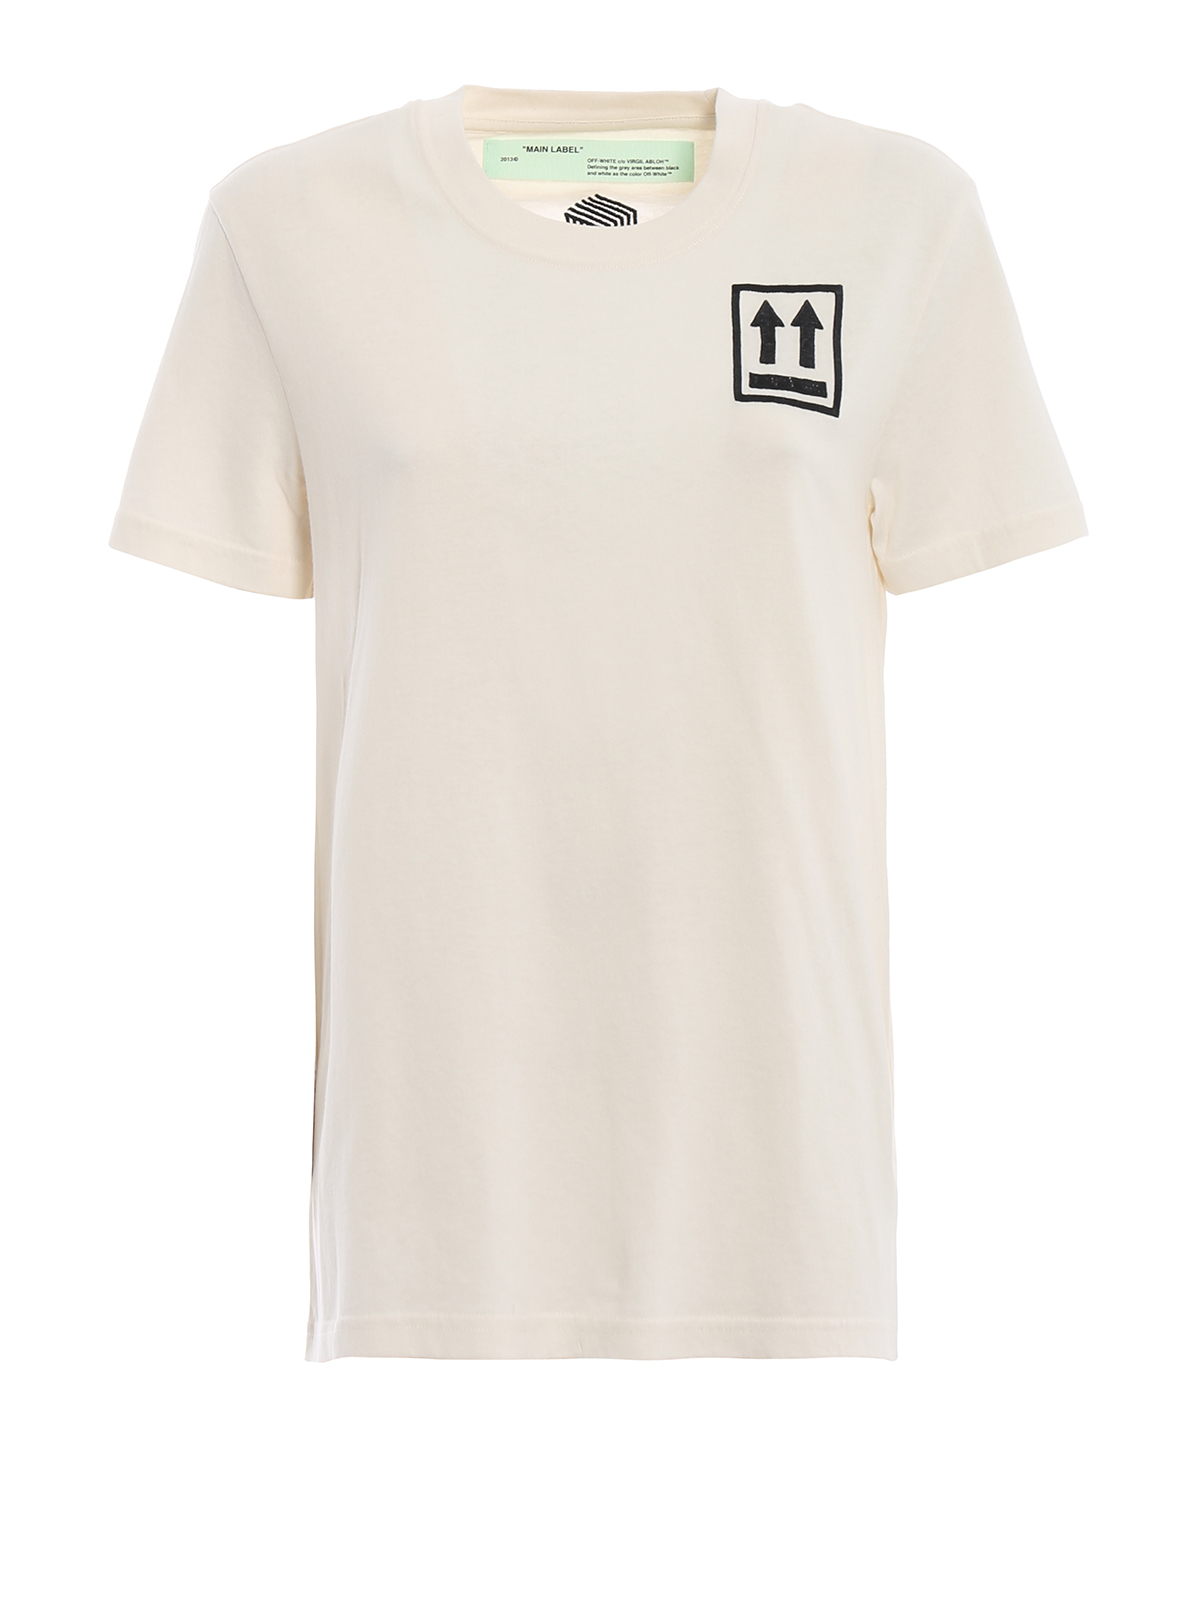 あなたにおすすめの商品 新品 MAIN LABEL Off-White Tシャツ dynamic-it.ro